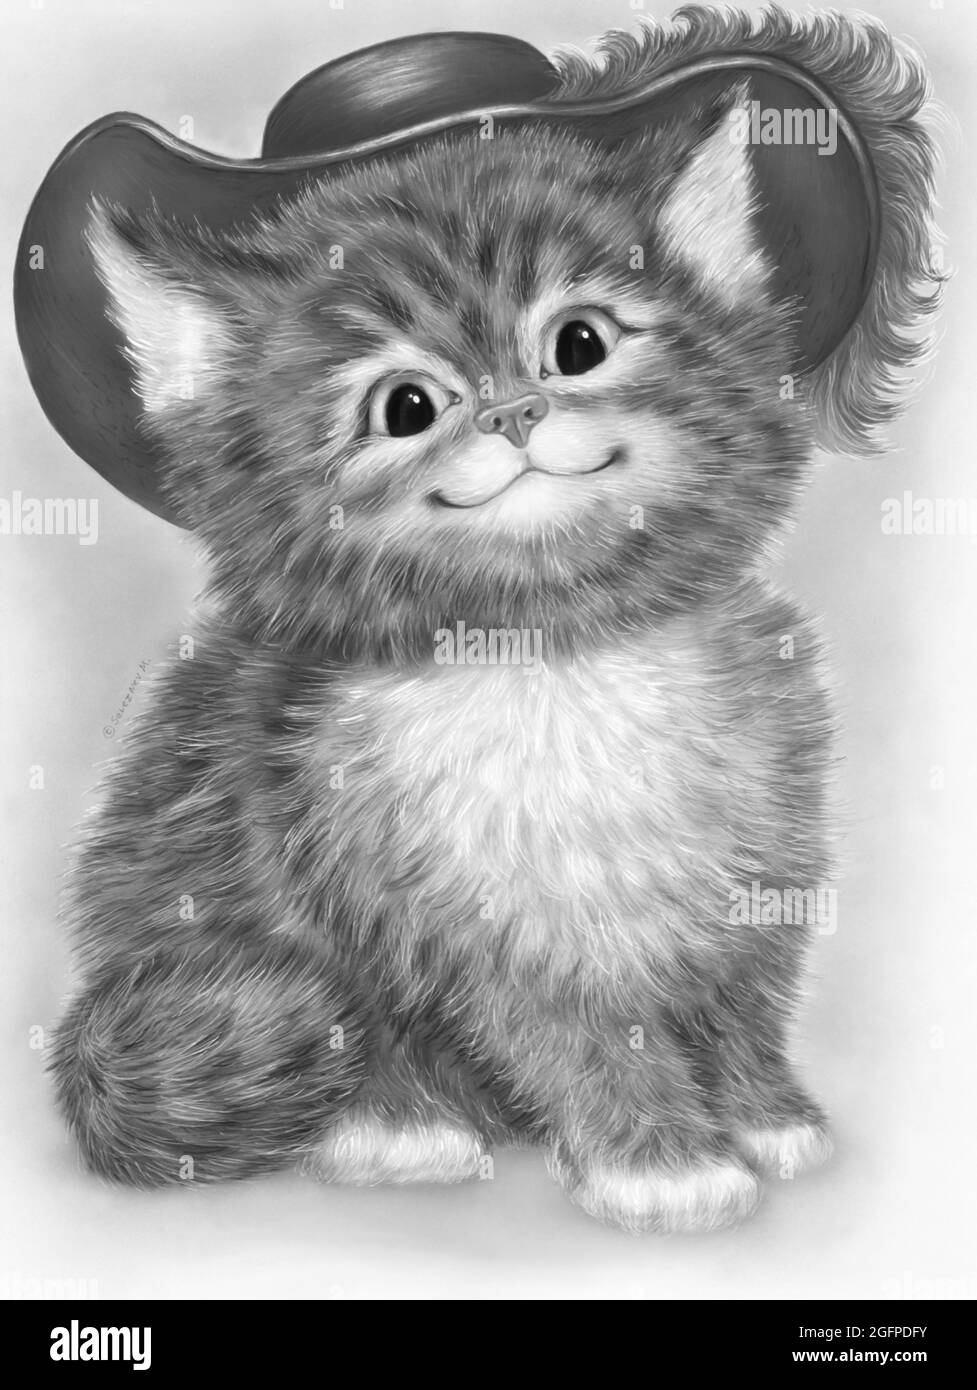 Gato dibujo a lápiz Imágenes de stock en blanco y negro - Página 2 - Alamy